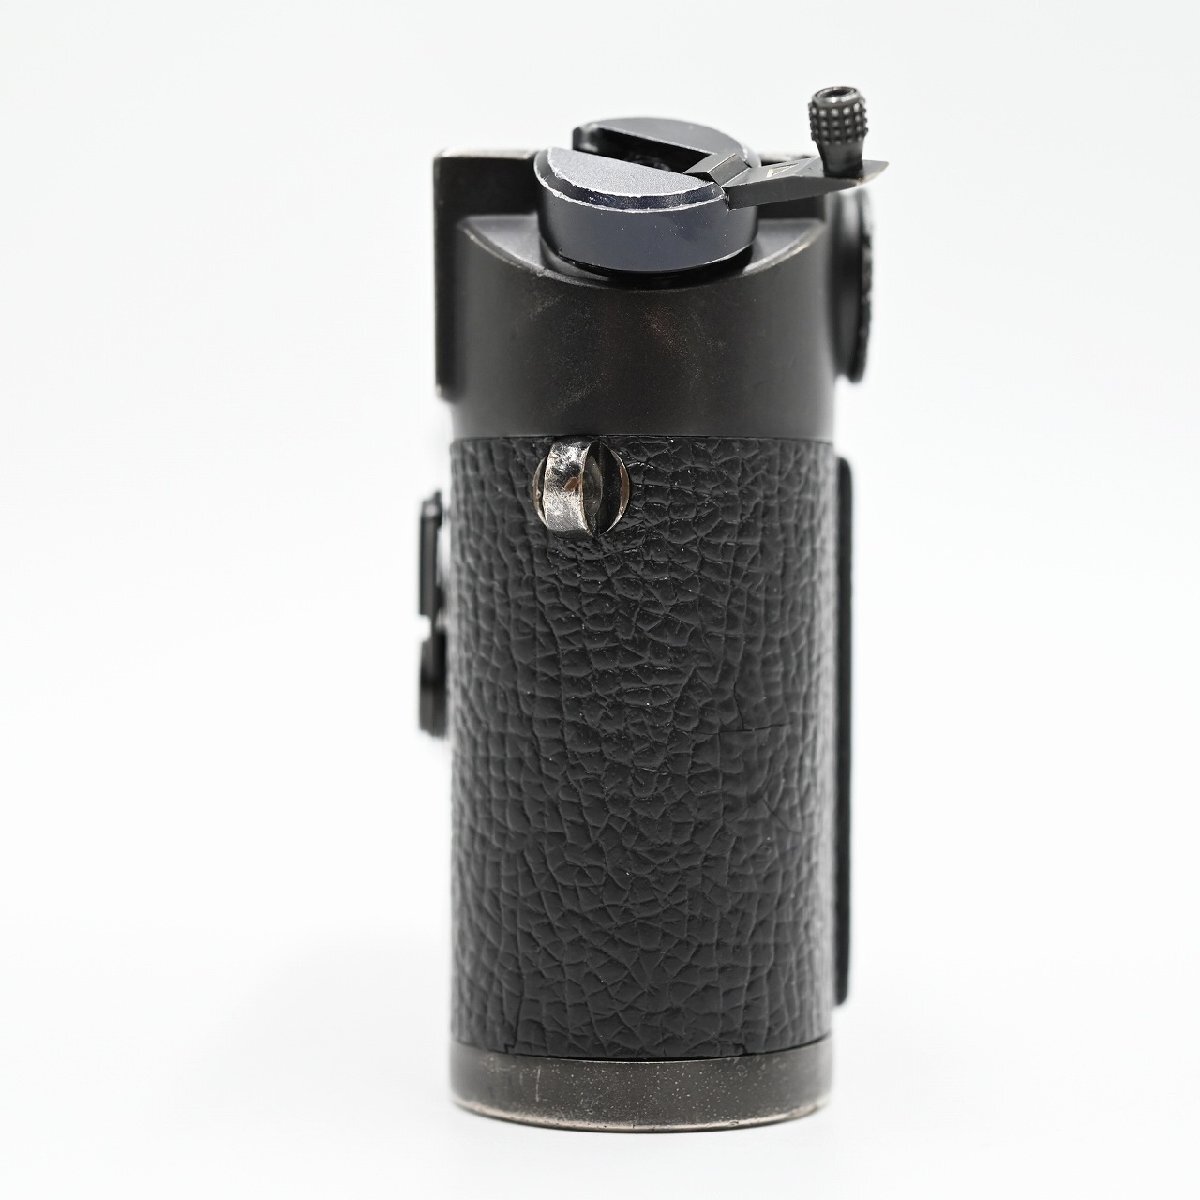 【希少機種 元箱付き】Leica M4 50周年記念モデル ボディ フィルムカメラ